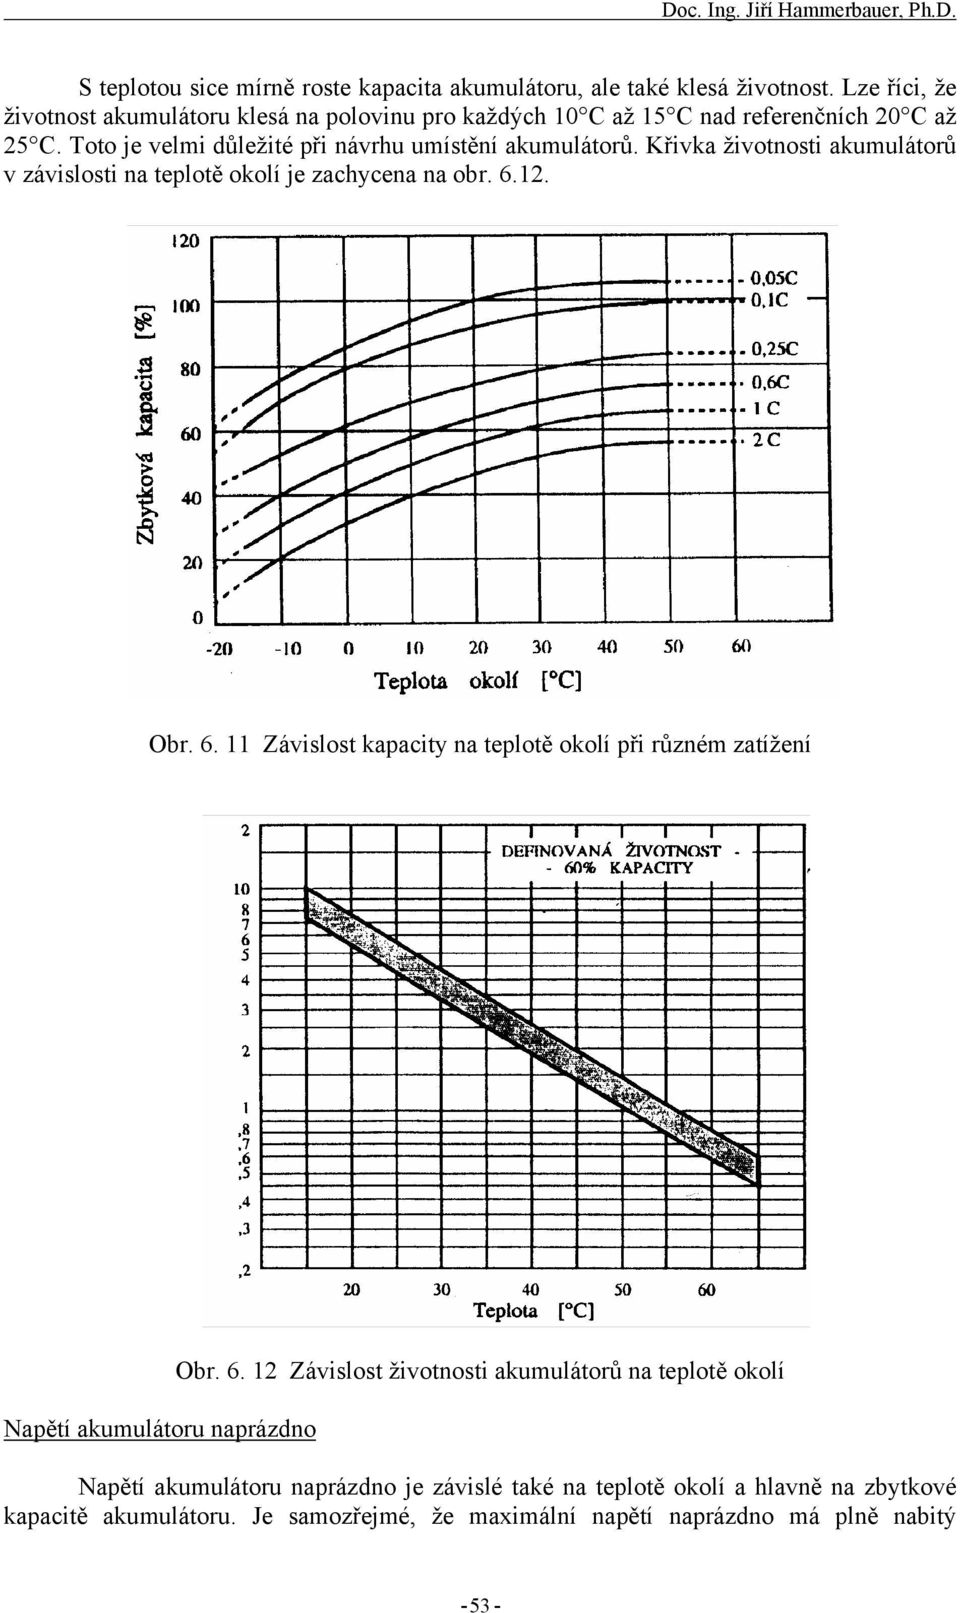 Křivka životnosti akumulátorů v závislosti na teplotě okolí je zachycena na obr. 6.